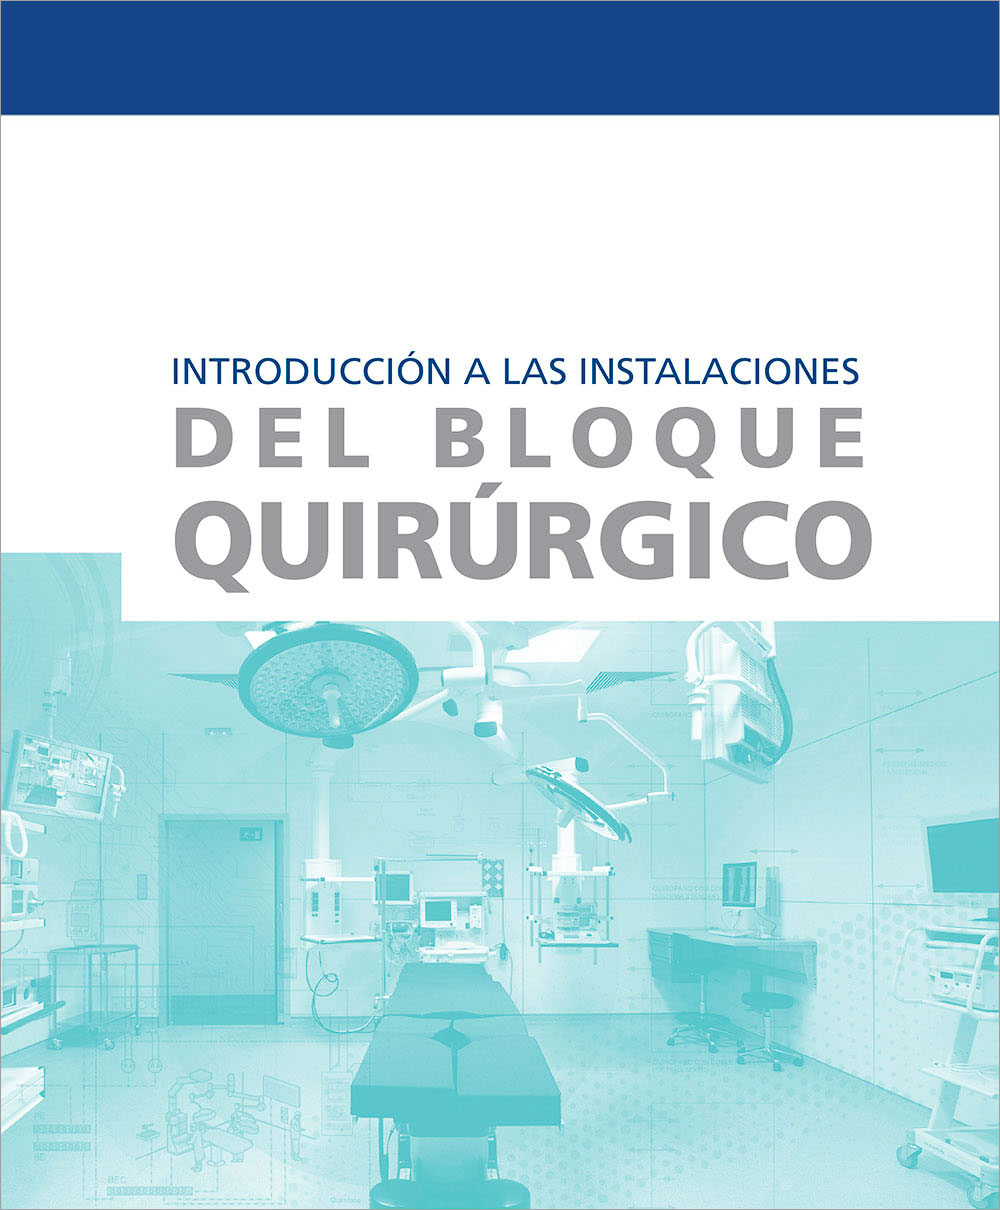 Presentation of the book ¨Introducción a las instalaciones del Bloque Quirúrgico¨